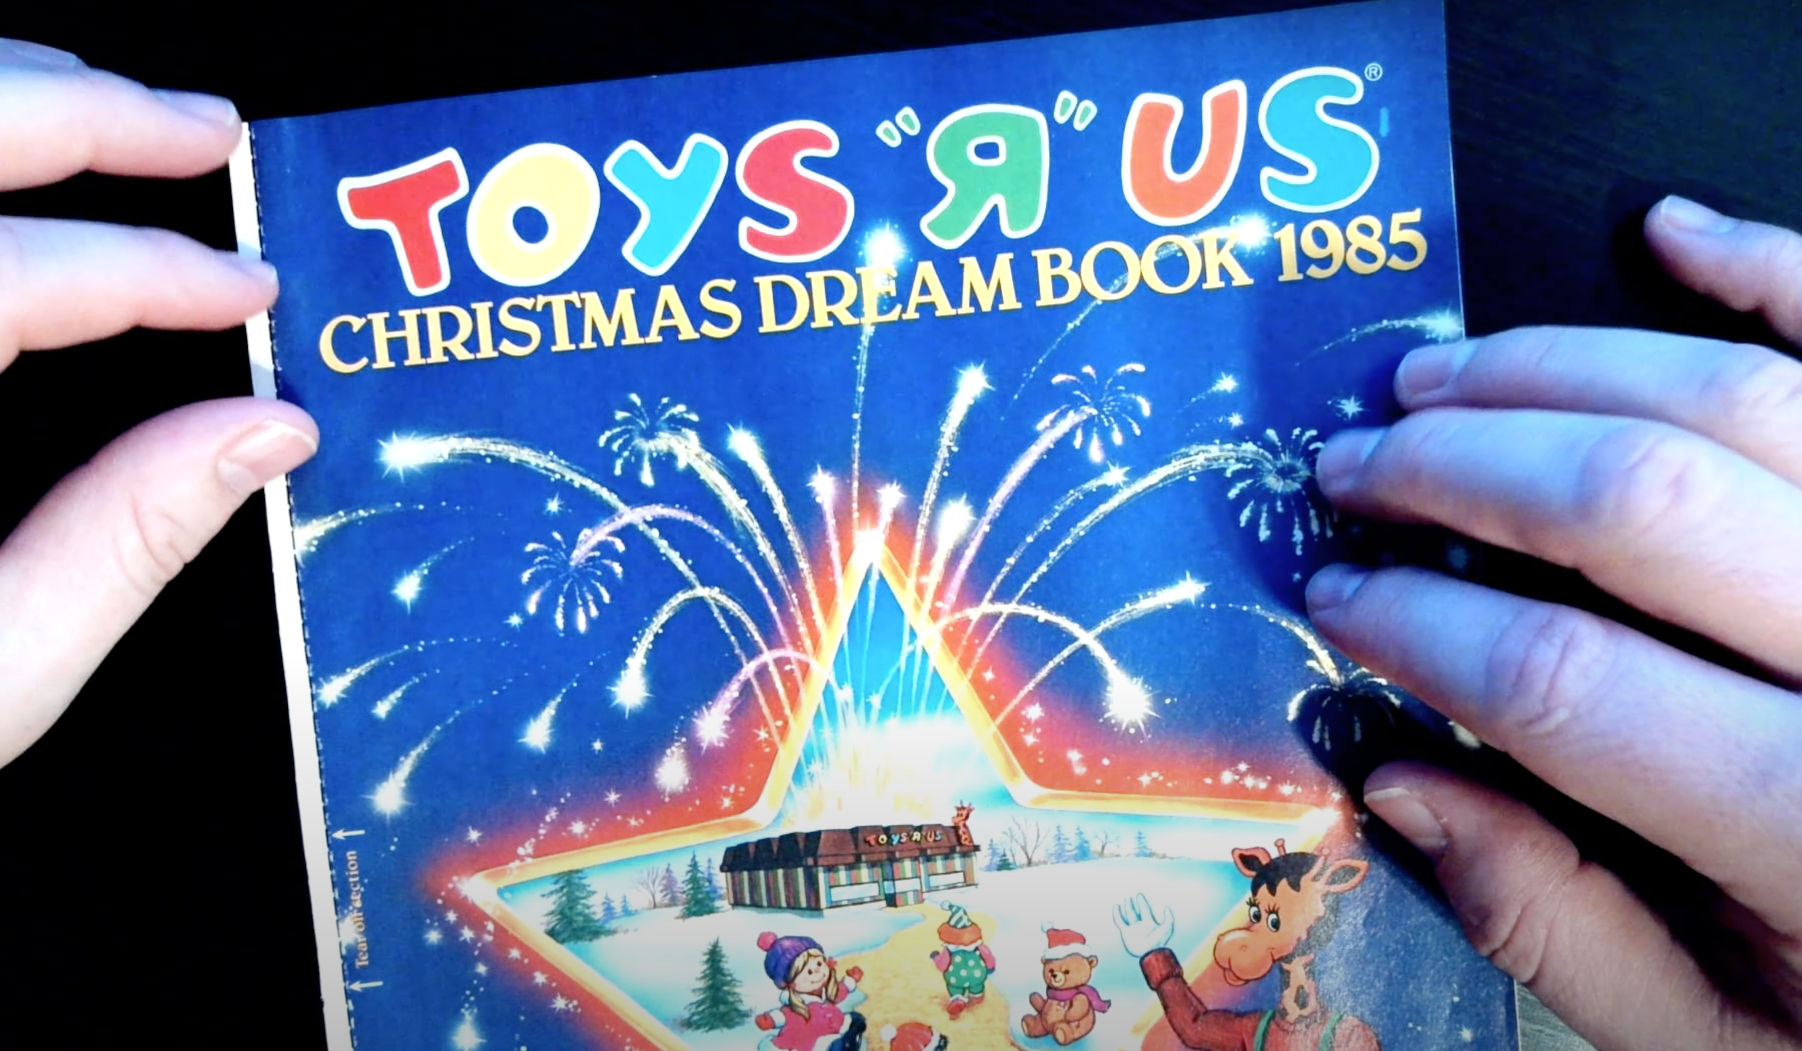 Christmas Dream Book 1985